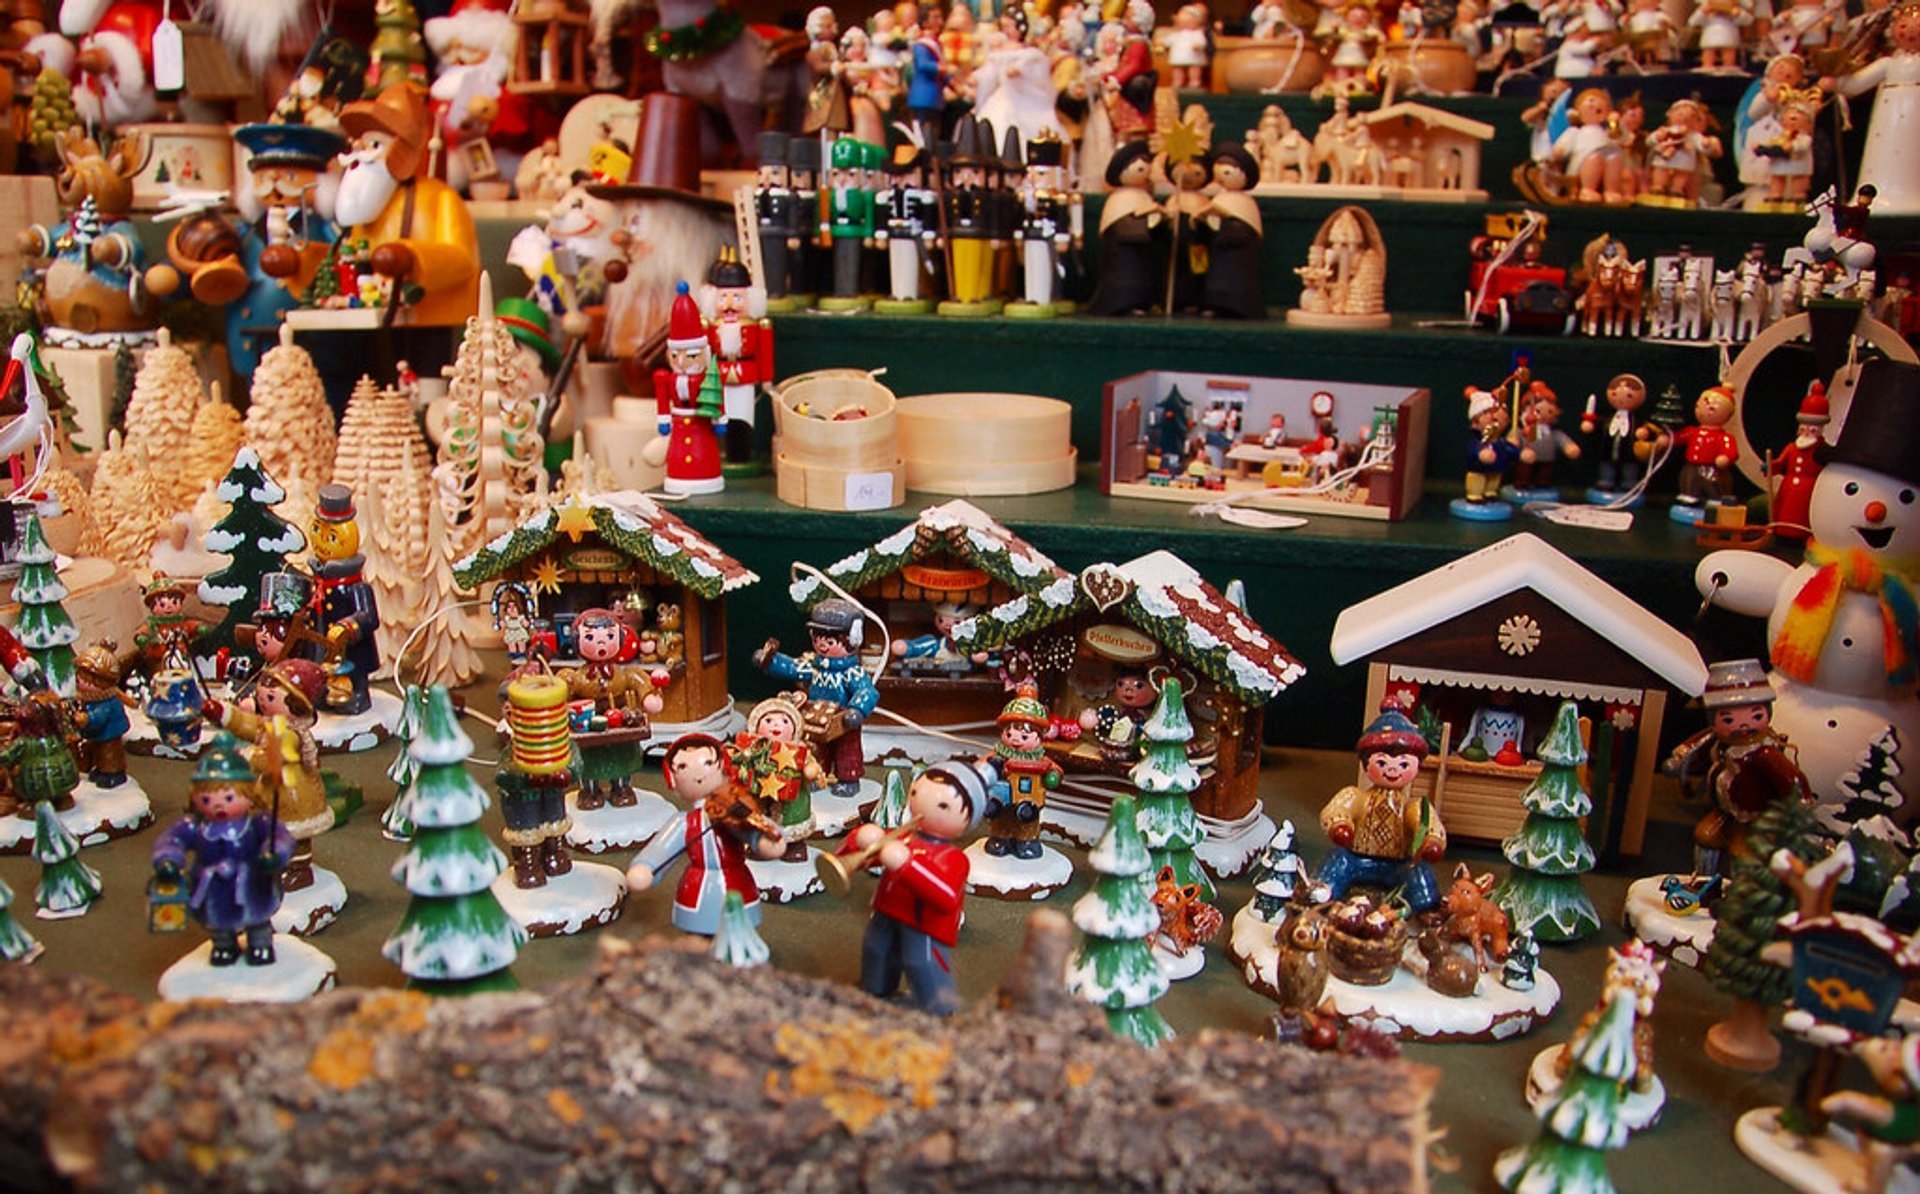 Mercados de Navidad (Weihnachtsmärkte)